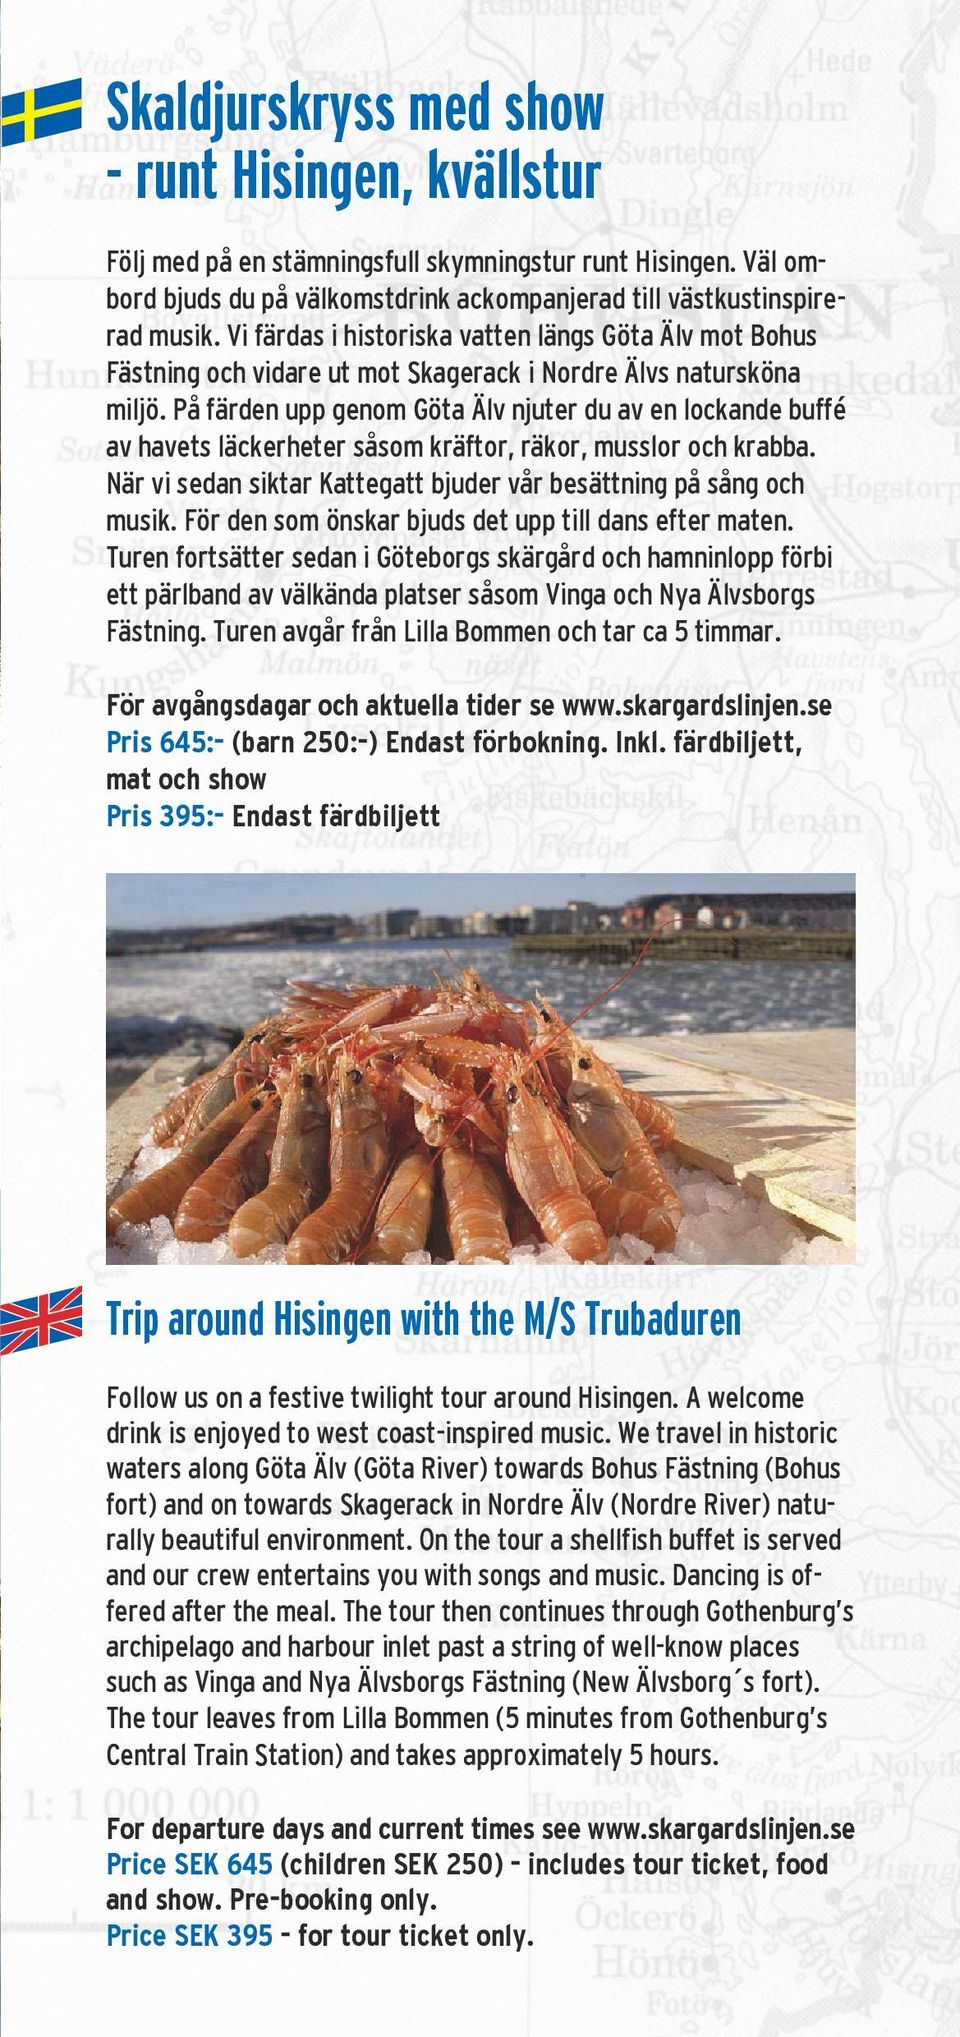 På färden upp genom Göta Älv njuter du av en lockande buffé av havets läckerheter såsom kräftor, räkor, musslor och krabba. När vi sedan siktar Kattegatt bjuder vår besättning på sång och musik.